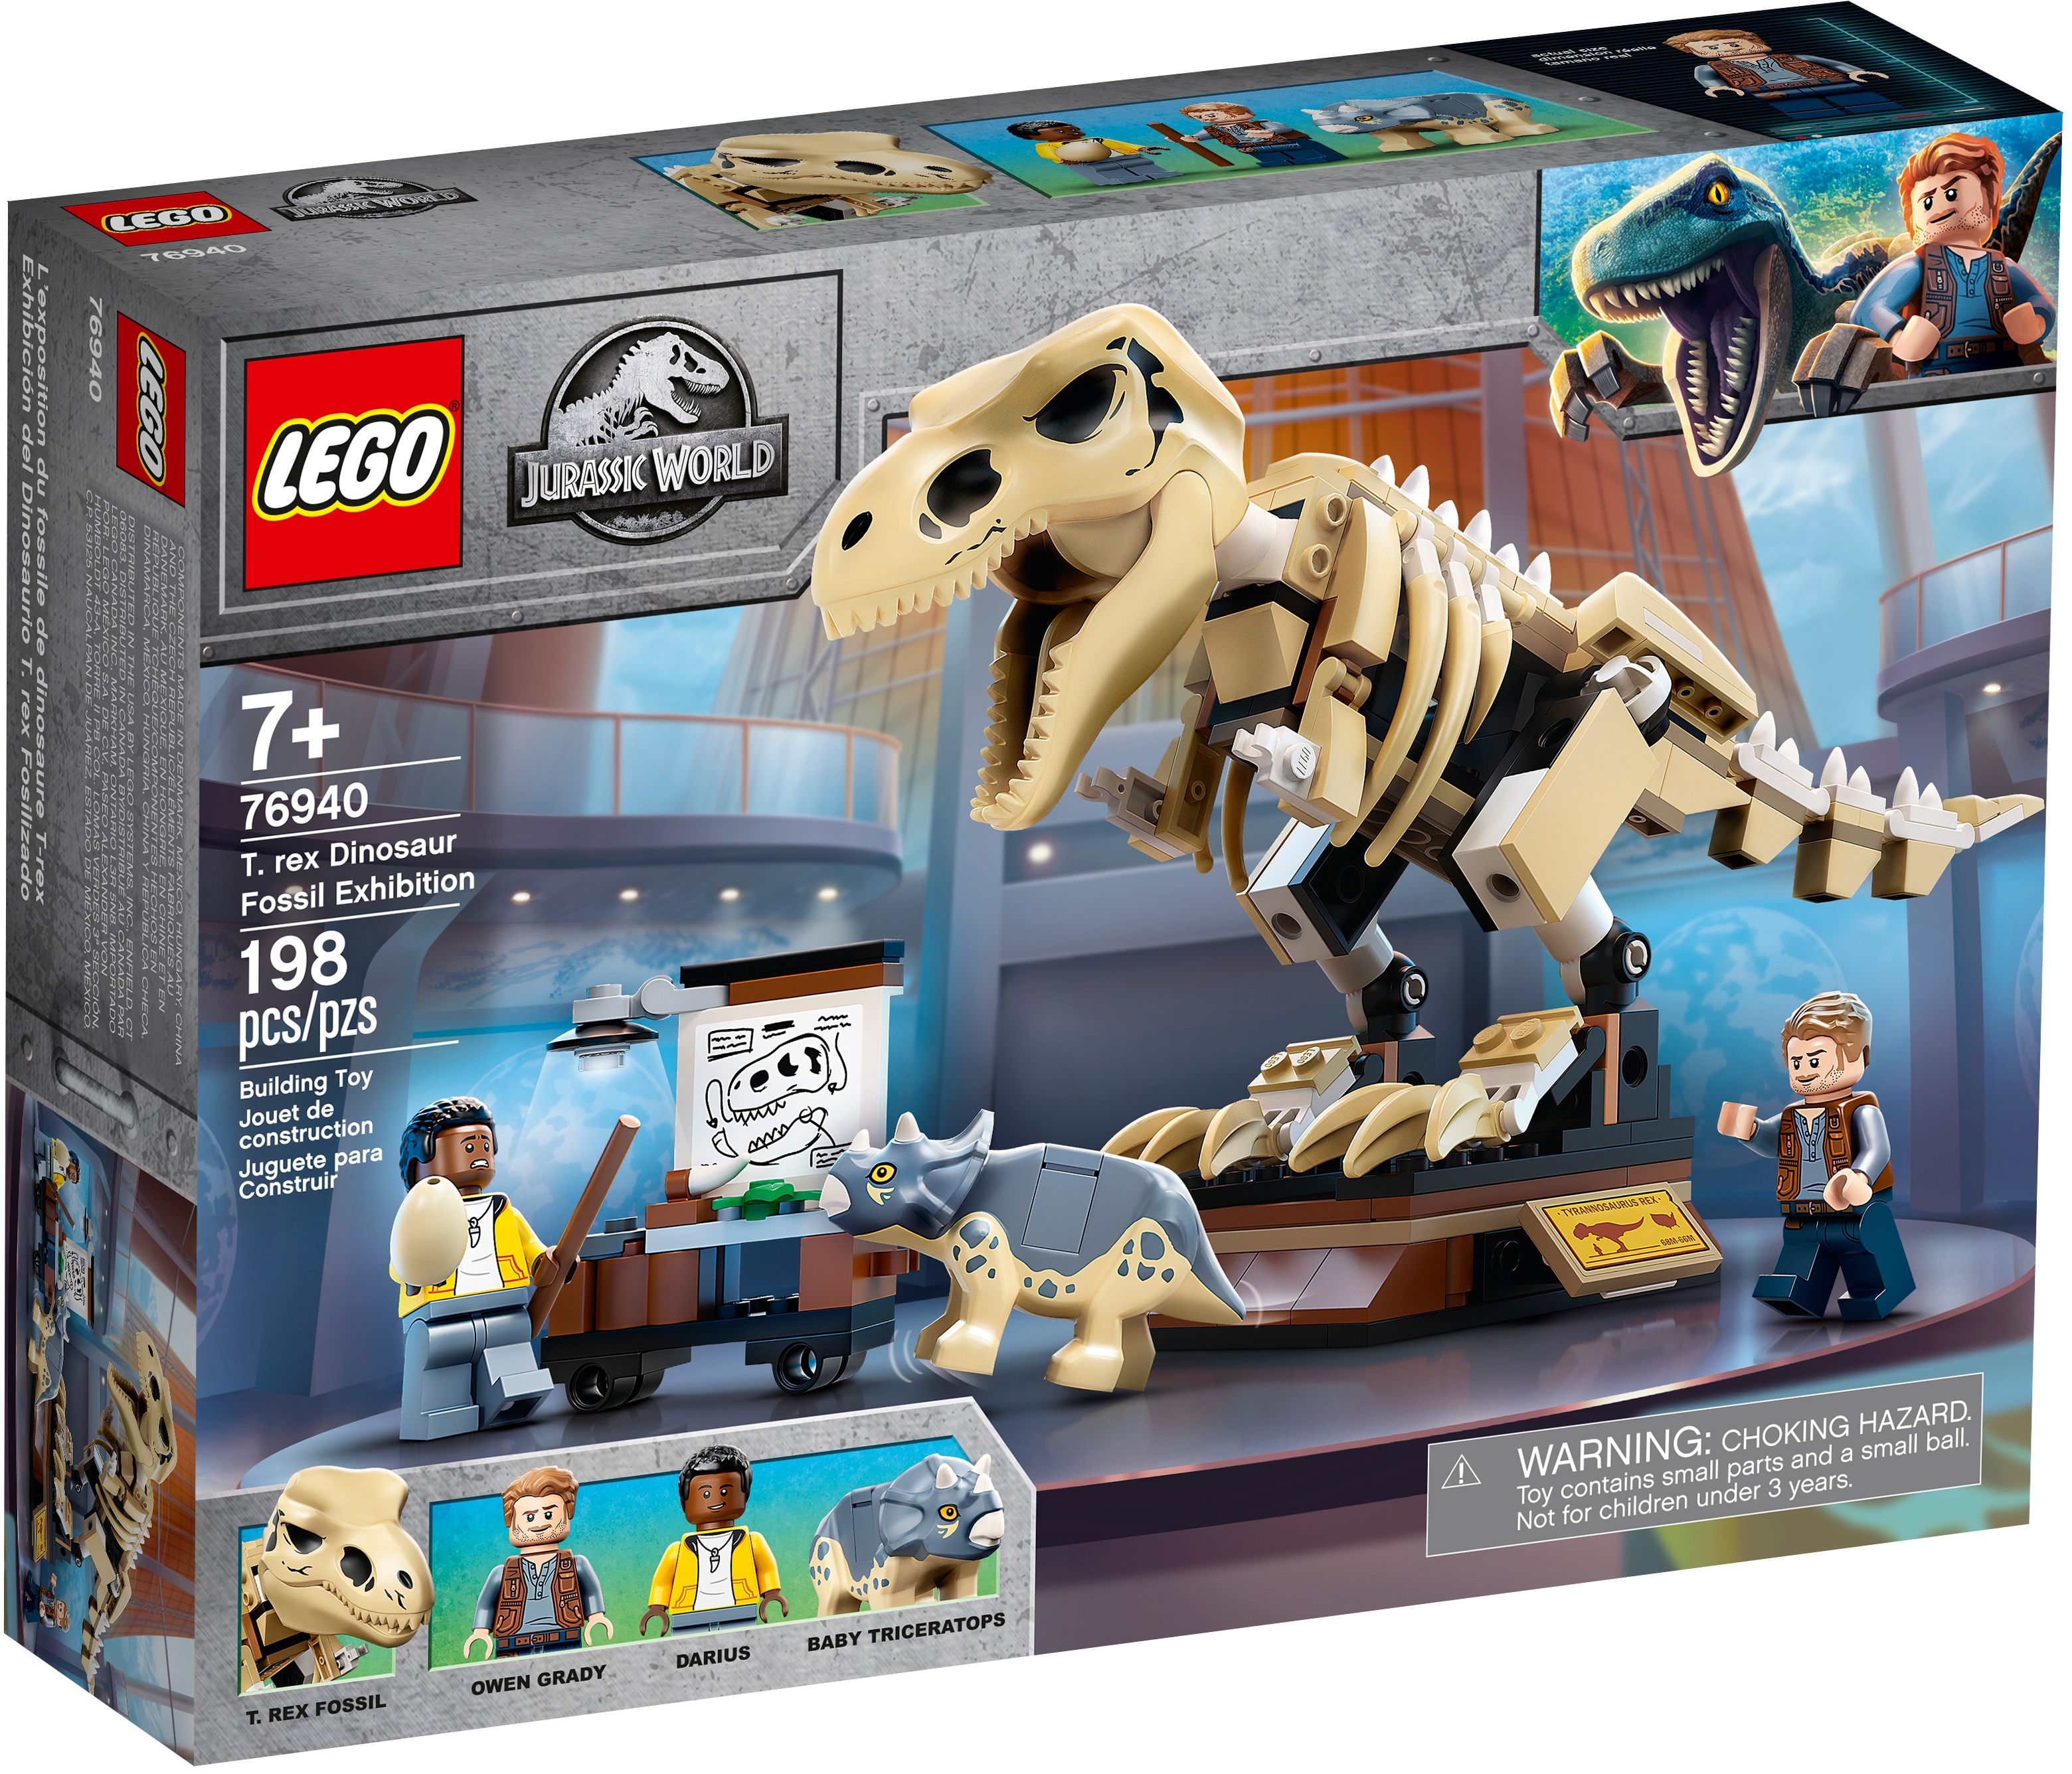 LEGO Jurassic World 76940 T. Rex-Skelett in der Fossilienausstellung LEGO_76940_alt1.jpg